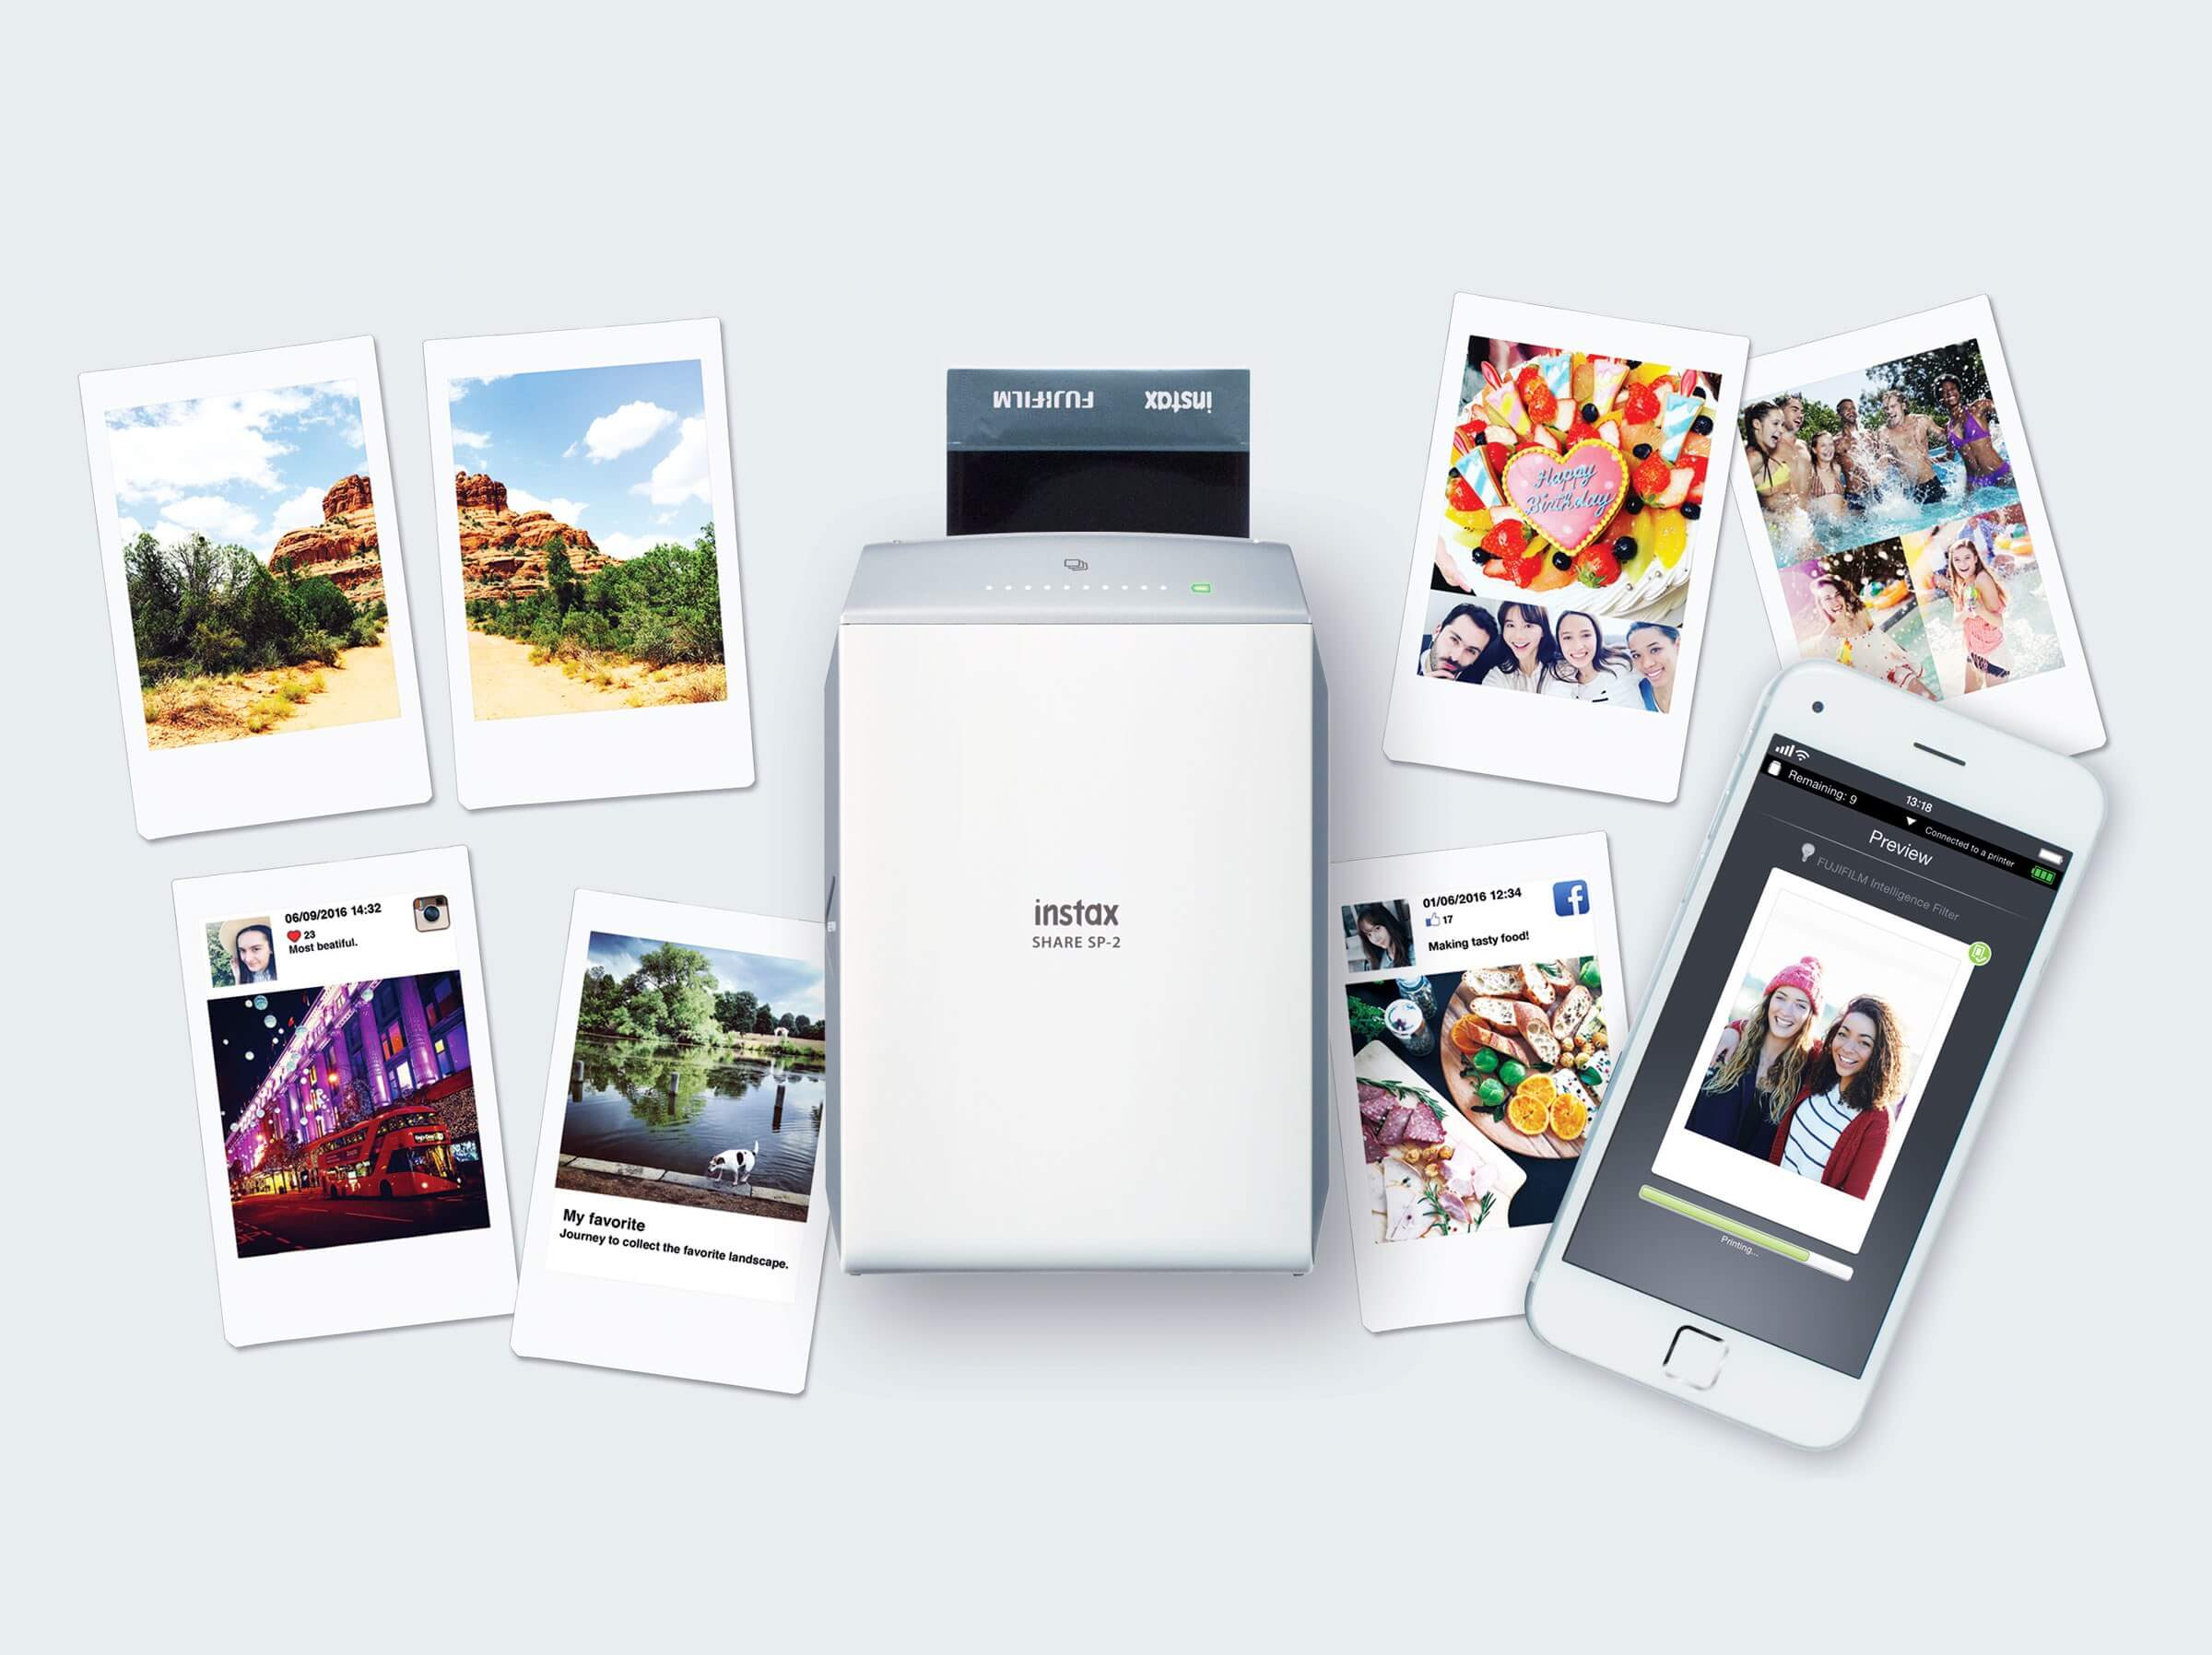 Обзор мобильных принтеров Instax для печати фото Instax, Share, печати, помощью, всего, достаточно, нажать, кнопку, пользователей, возможность, сделать, является, секунд, можно, распечатать, принтер, выбрать, Стоимость, этого, позволяет